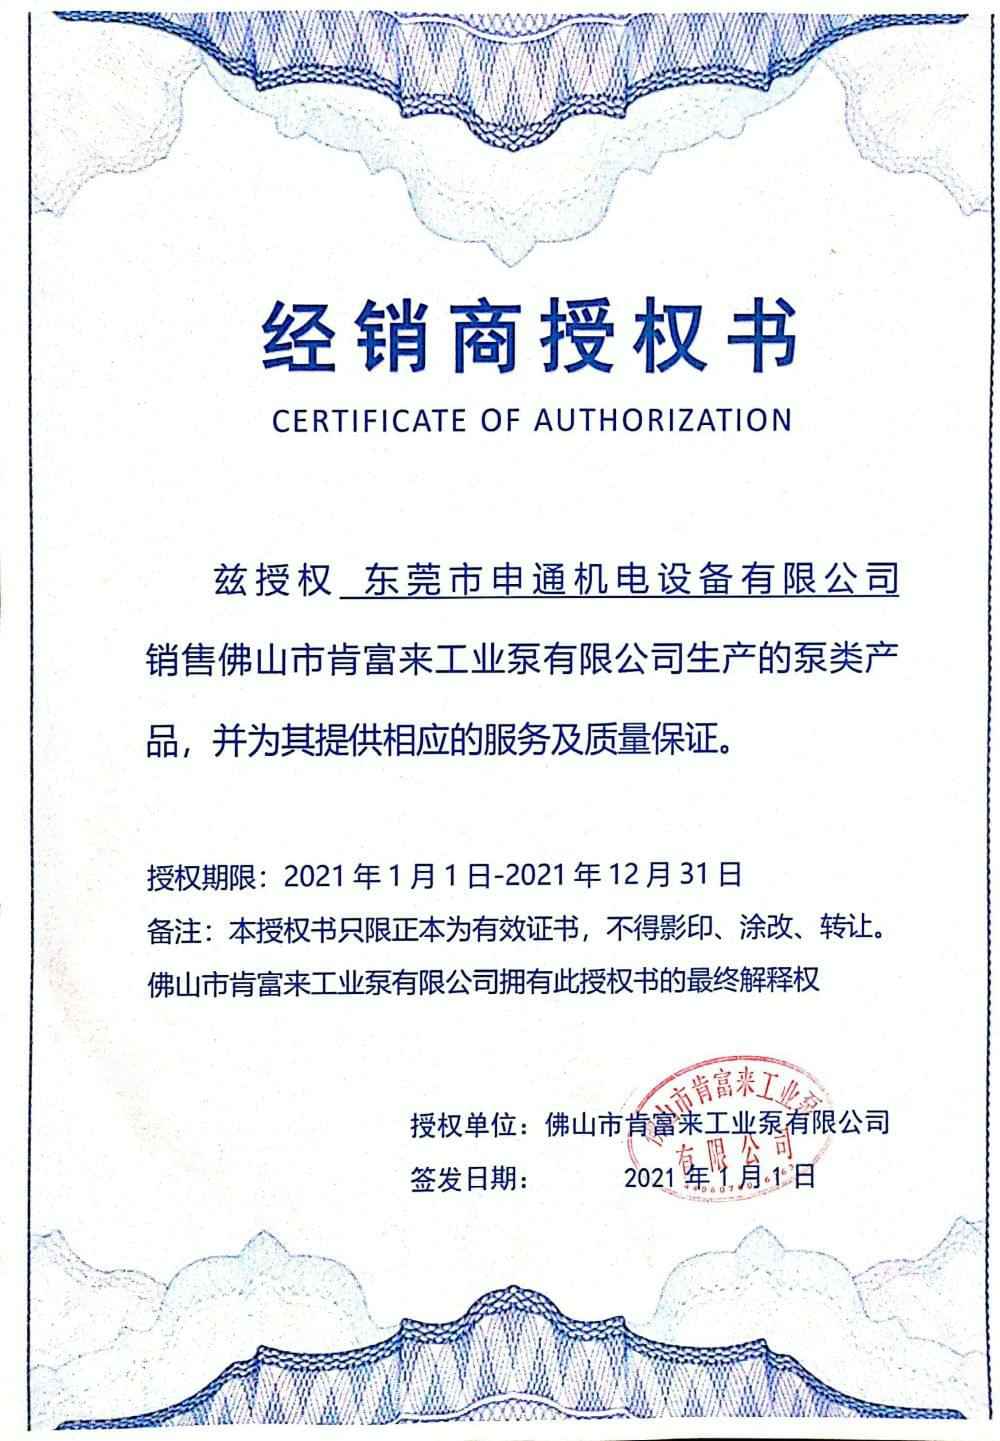 hgα030皇冠(中国)crown科技有限公司授权书